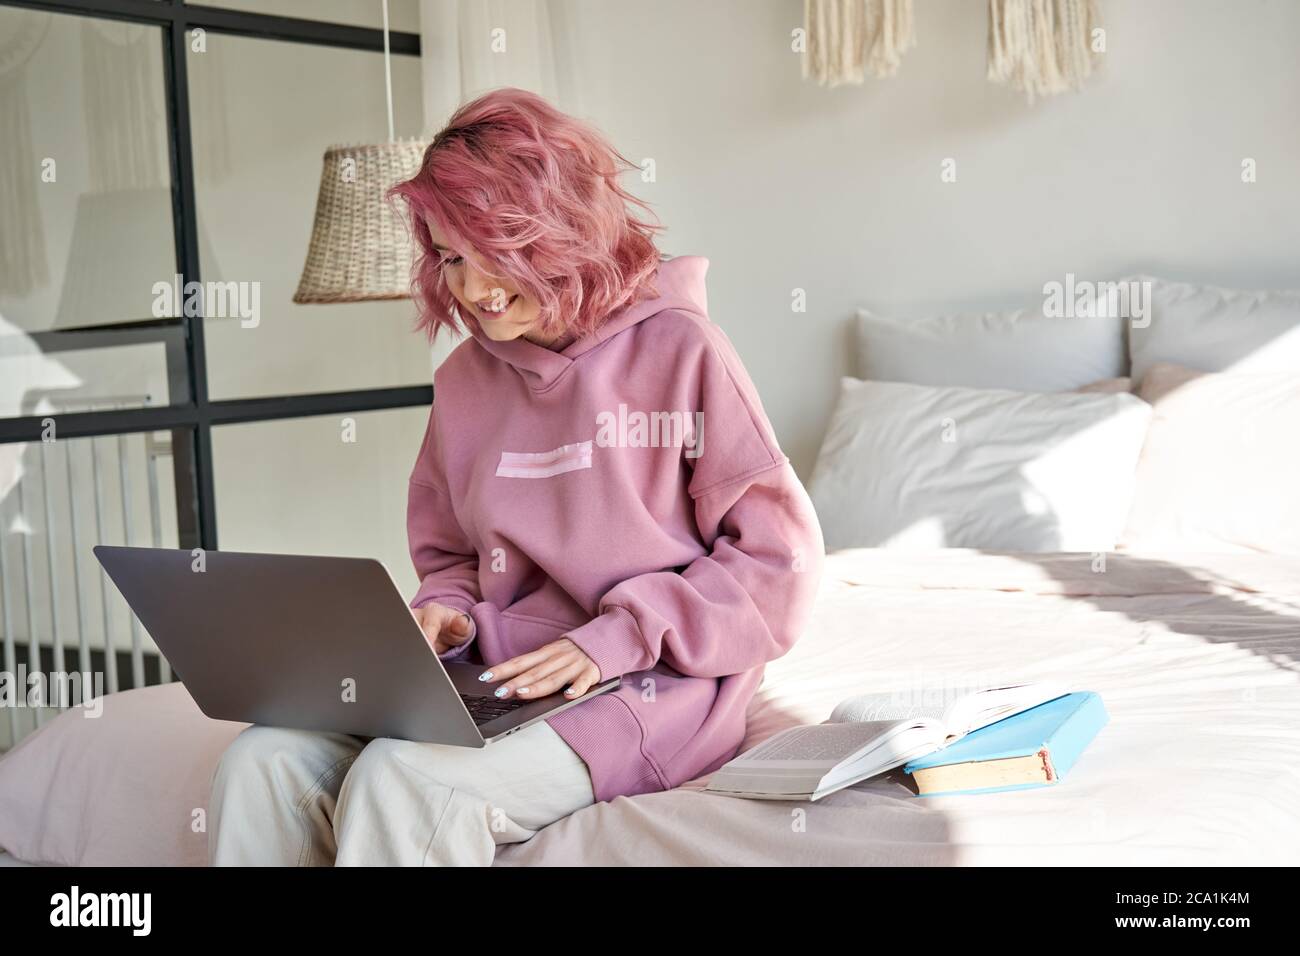 Lächelnd teen Mädchen Student mit rosa Haar verwenden Laptop online lernen sitzen auf dem Bett. Stockfoto